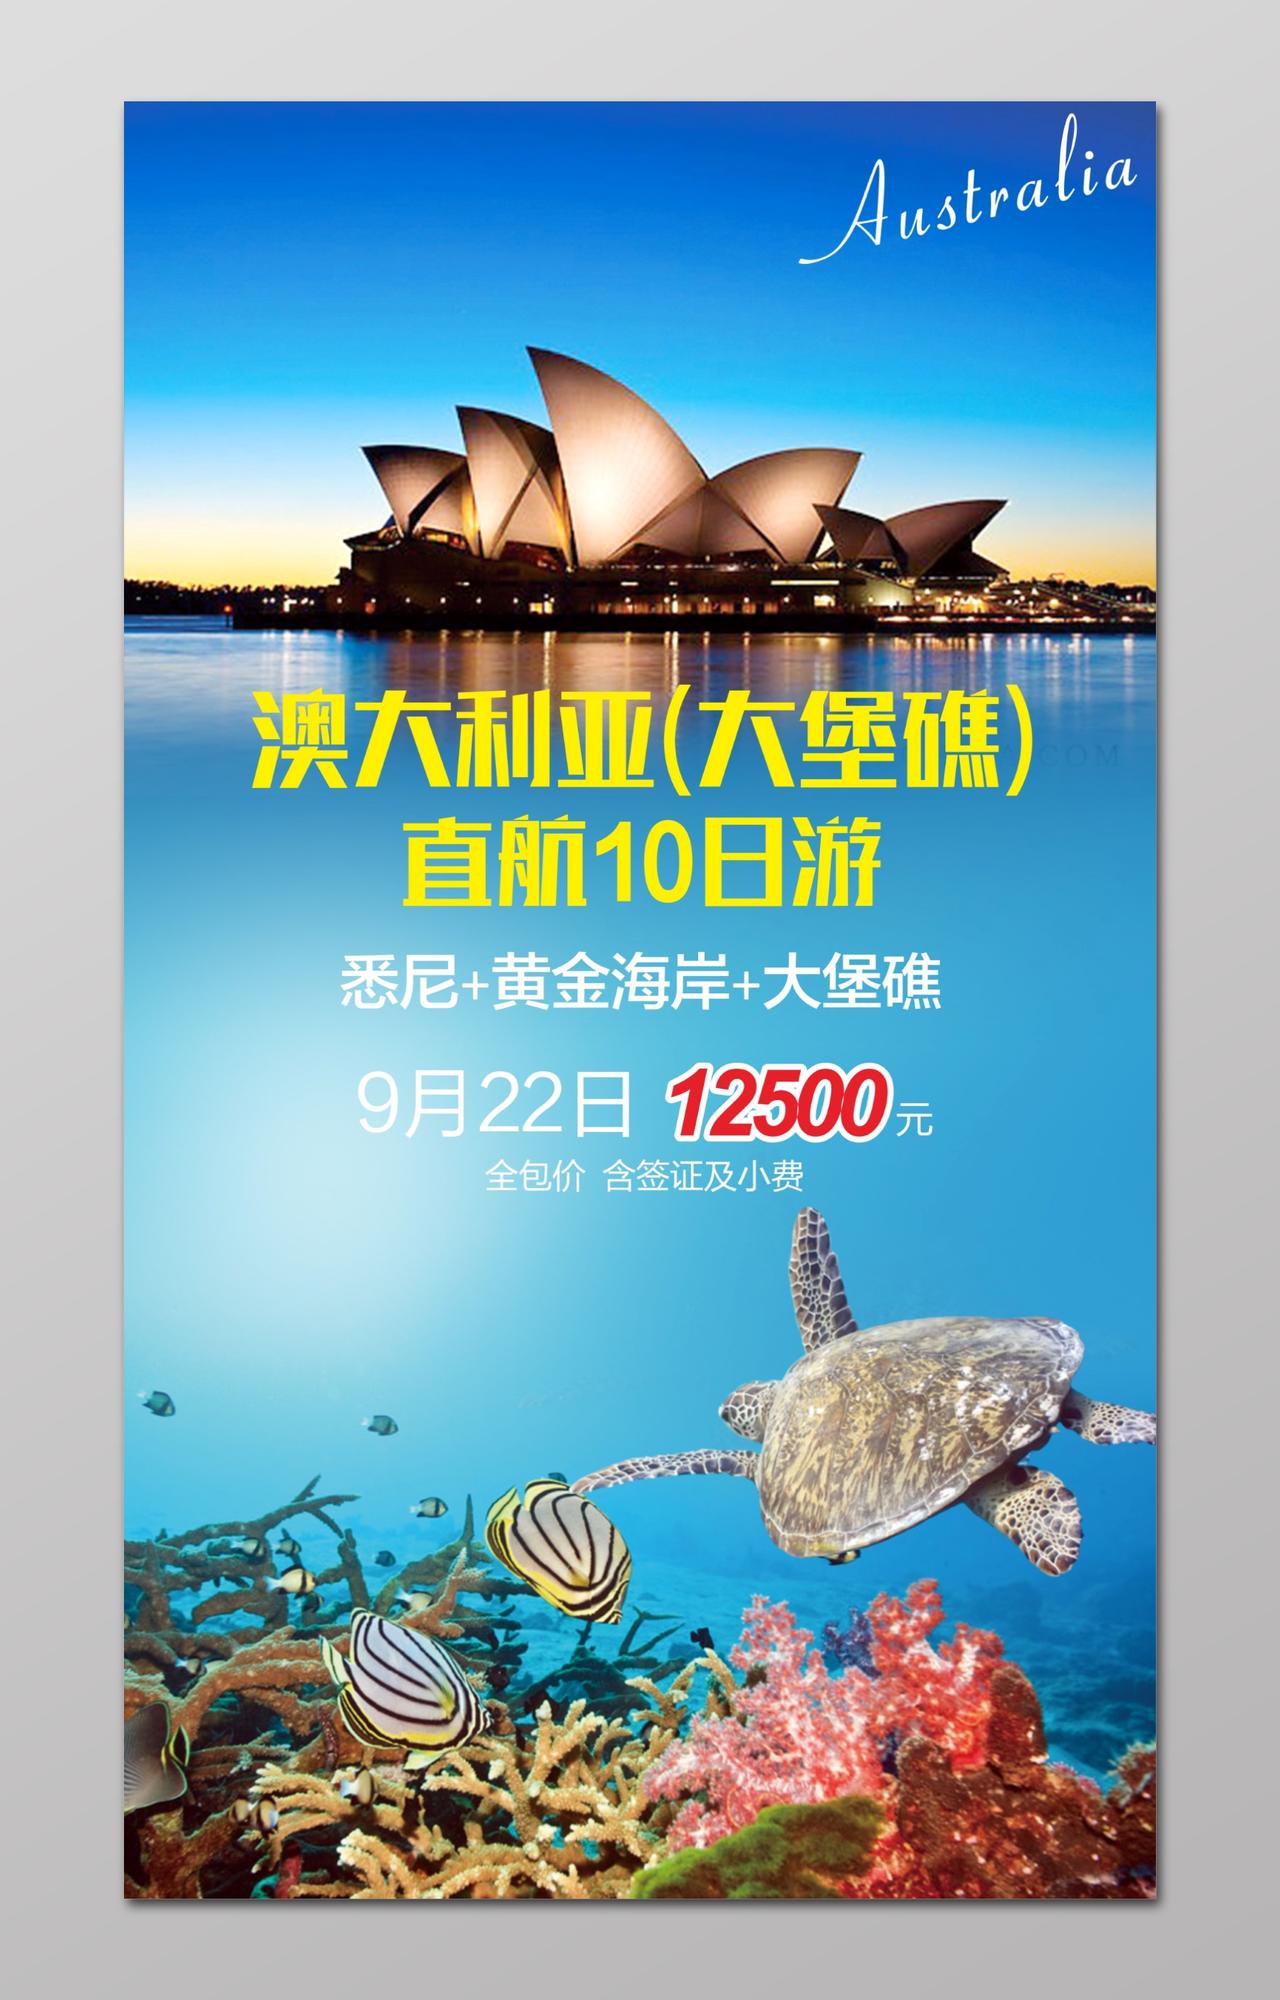 澳洲澳大利亚旅游大堡礁直航10日游宣传海报